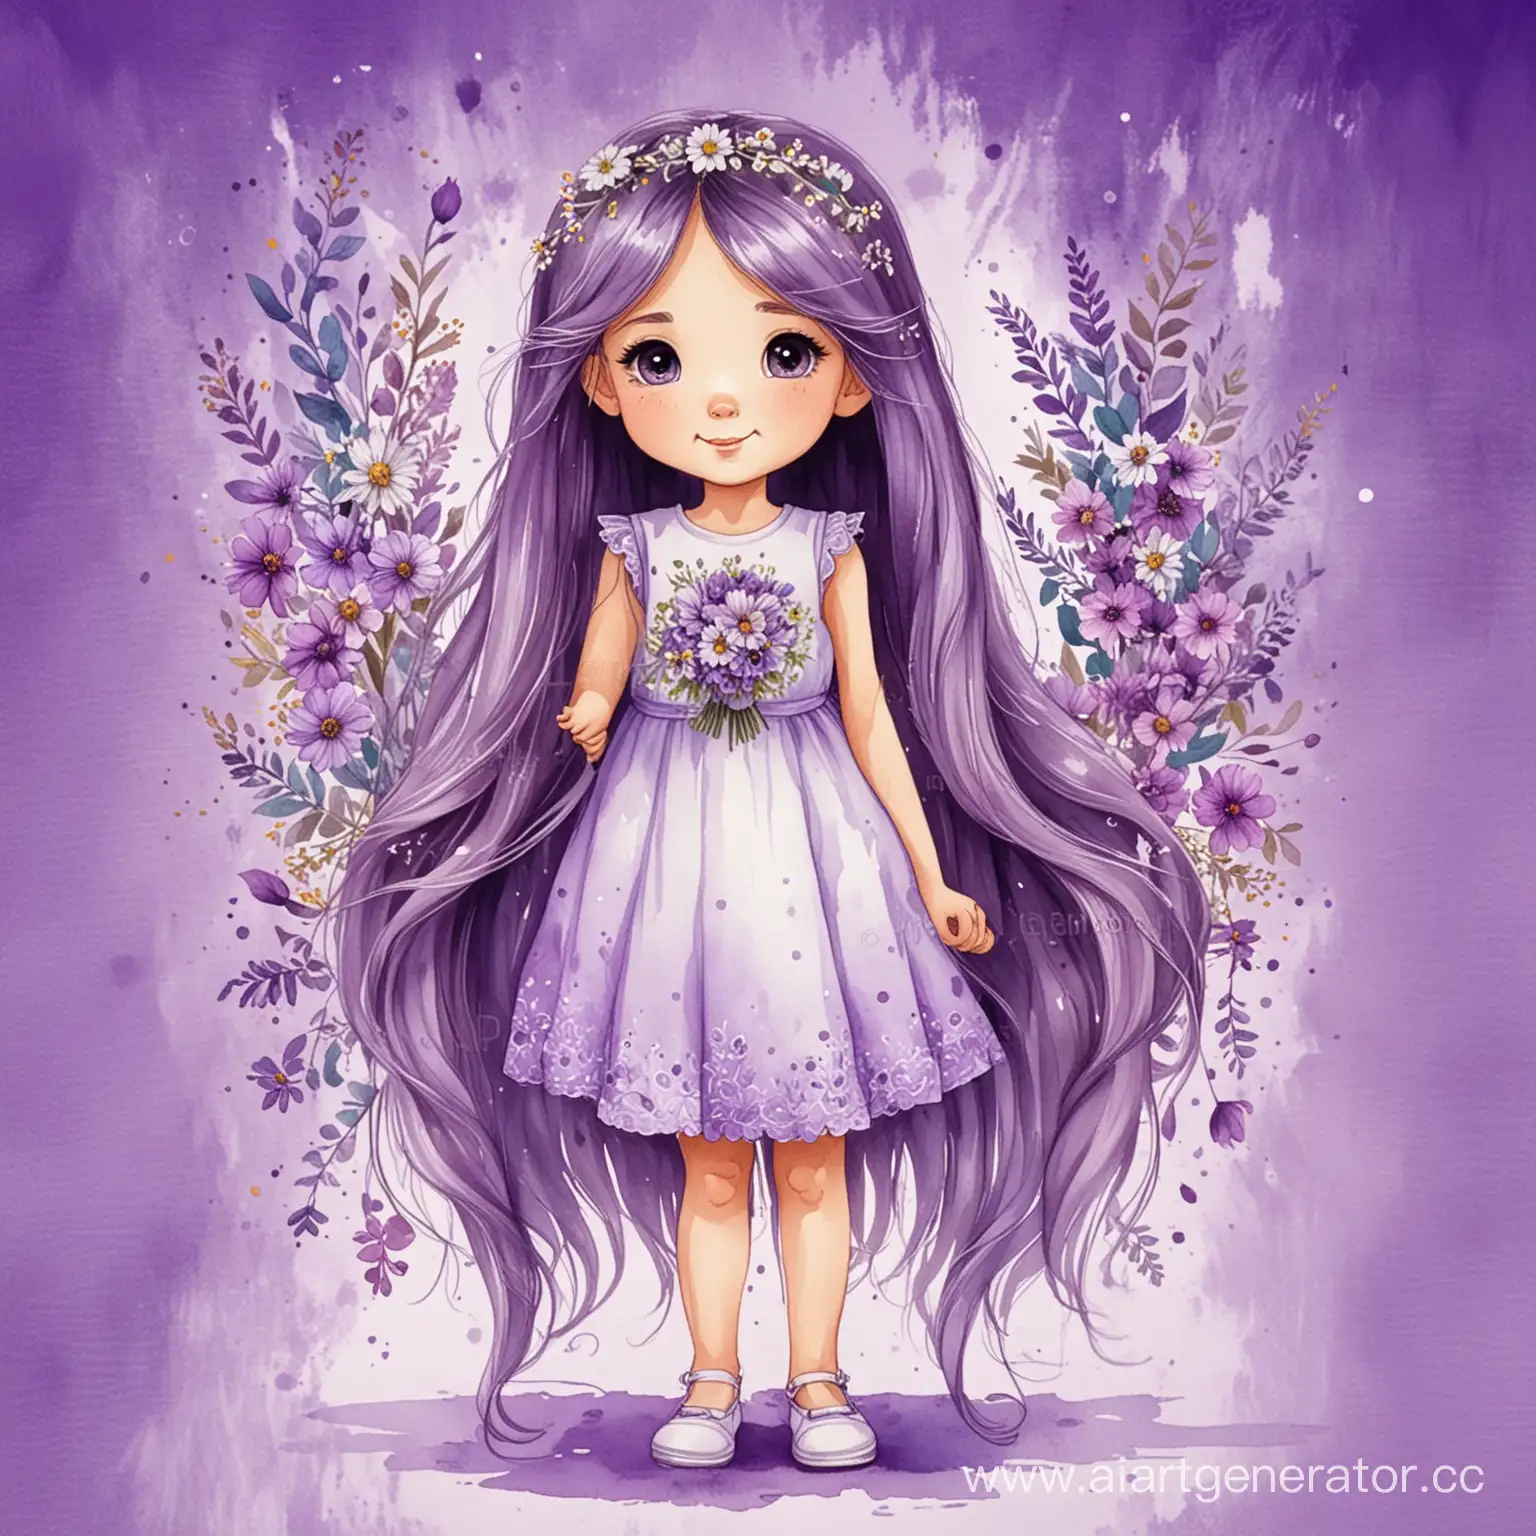 милая маленькая девочка с длинными волосами в полный рост с украшениями и букетом, на фиолетовом акварельном фоне, акриловая прорисовка, мультяшный стиль
